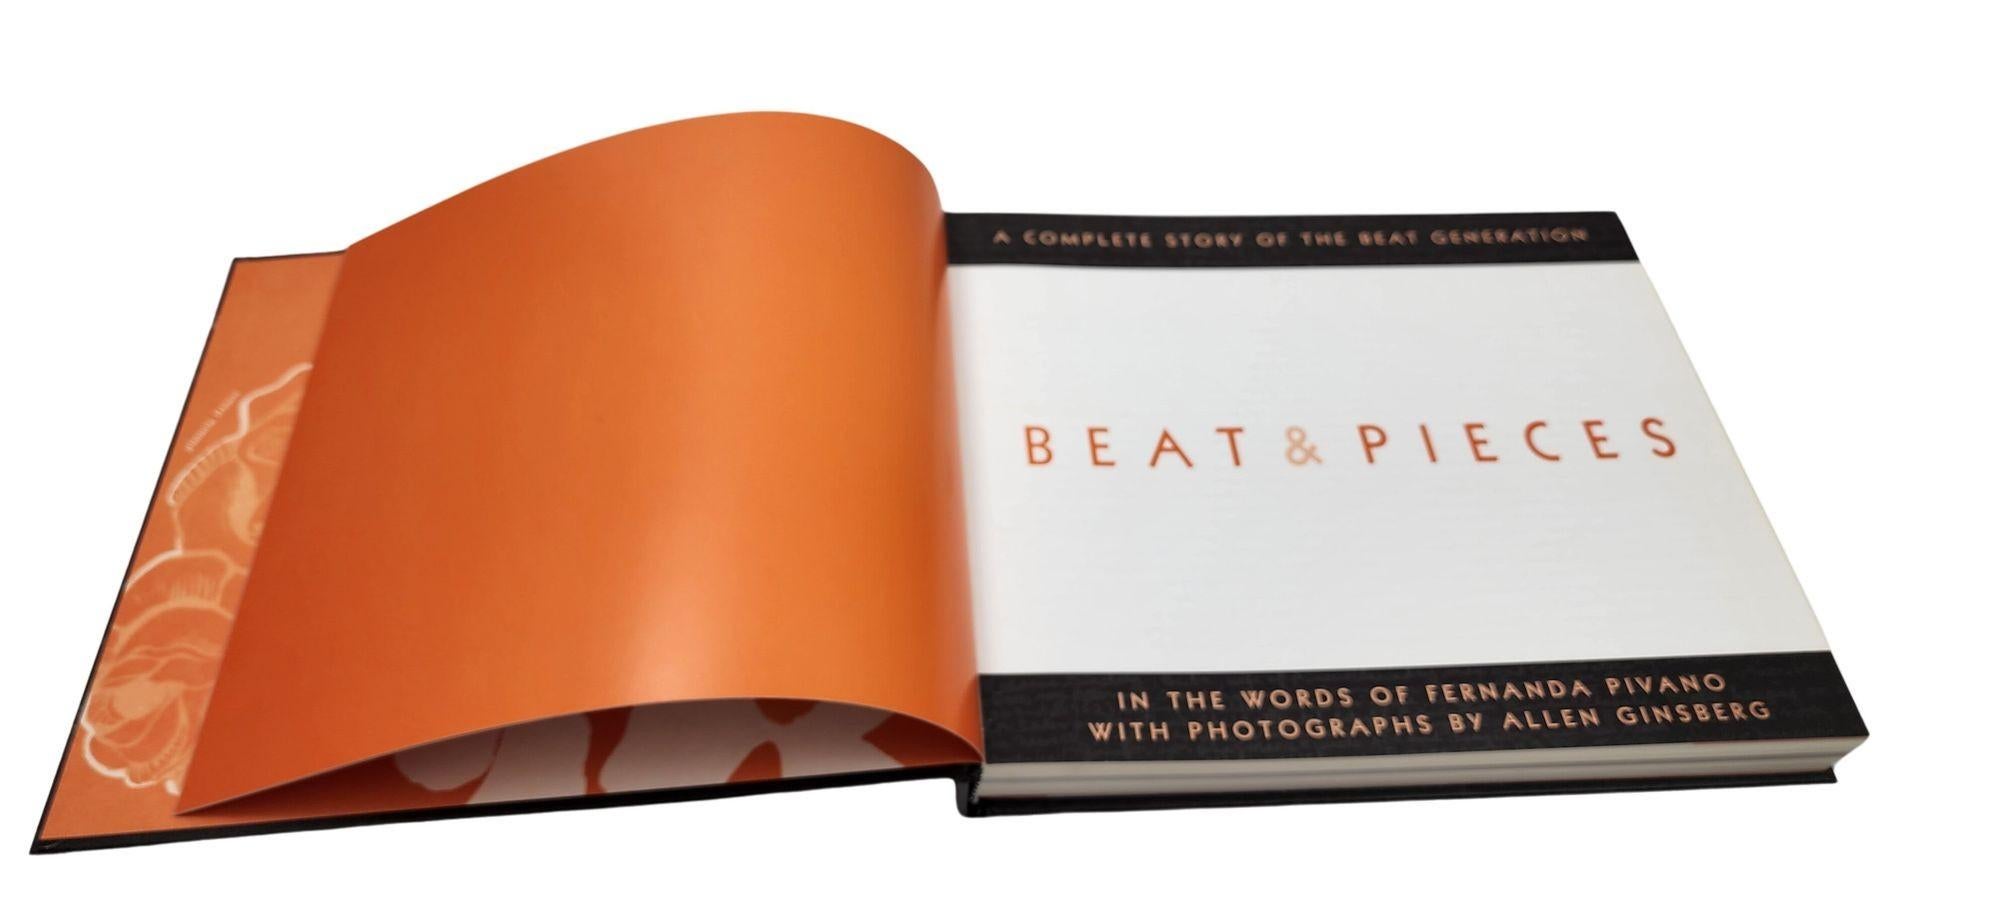 Beat and Pieces: A Complete Story of the Beat Generation de F. Pivano, édition limitée en vente 2